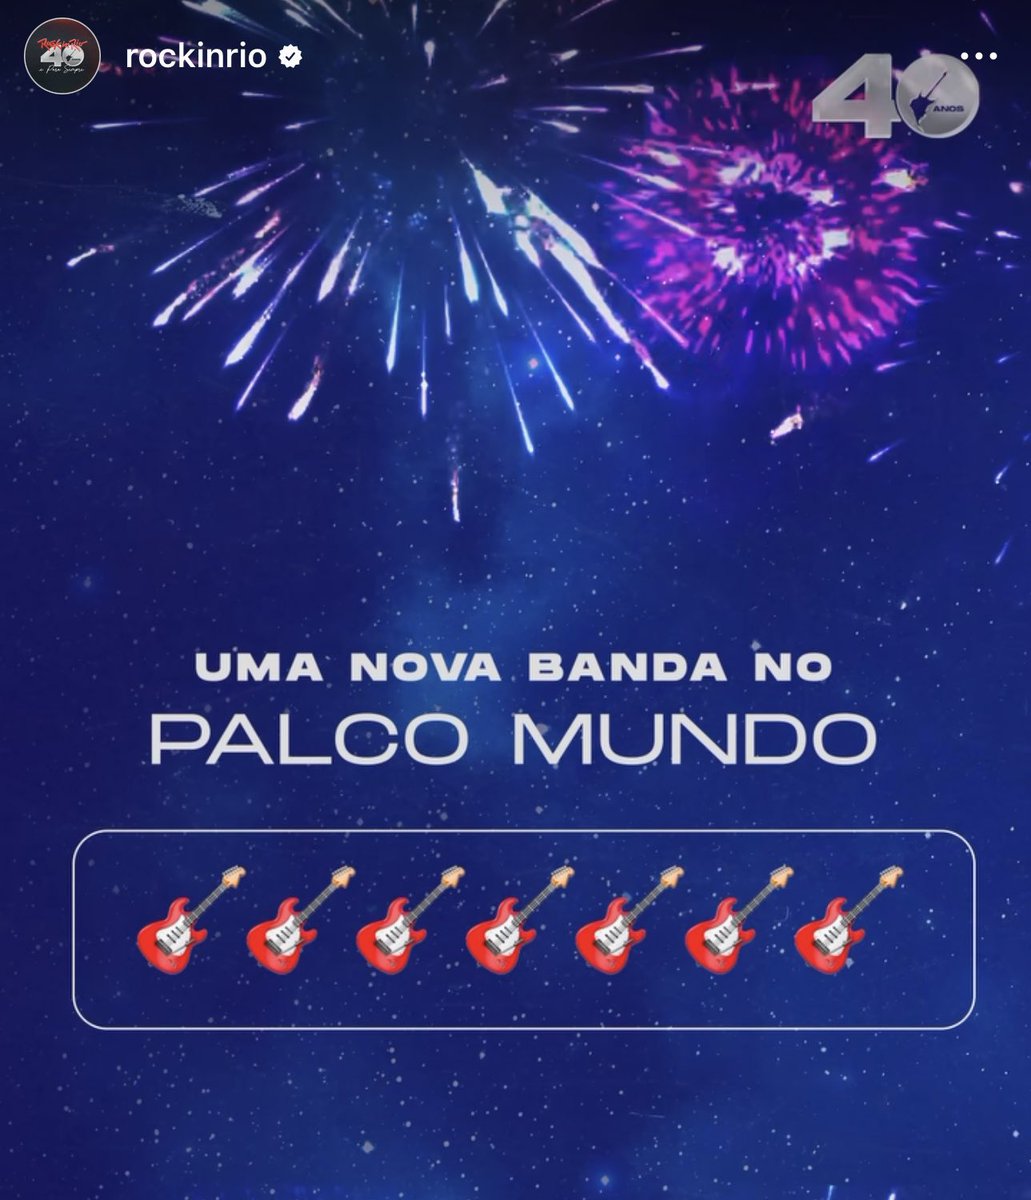 🚨ATENÇÃO: Rock in Rio coloca sete guitarras no spoiler do anúncio da banda que irá se apresentar no ano que vem e fãs do RBD fazem teoria: “A palavra ‘Rebelde’ tem 7 letras”. #RockInRio #RockinRio40Anos #RockinRio2024